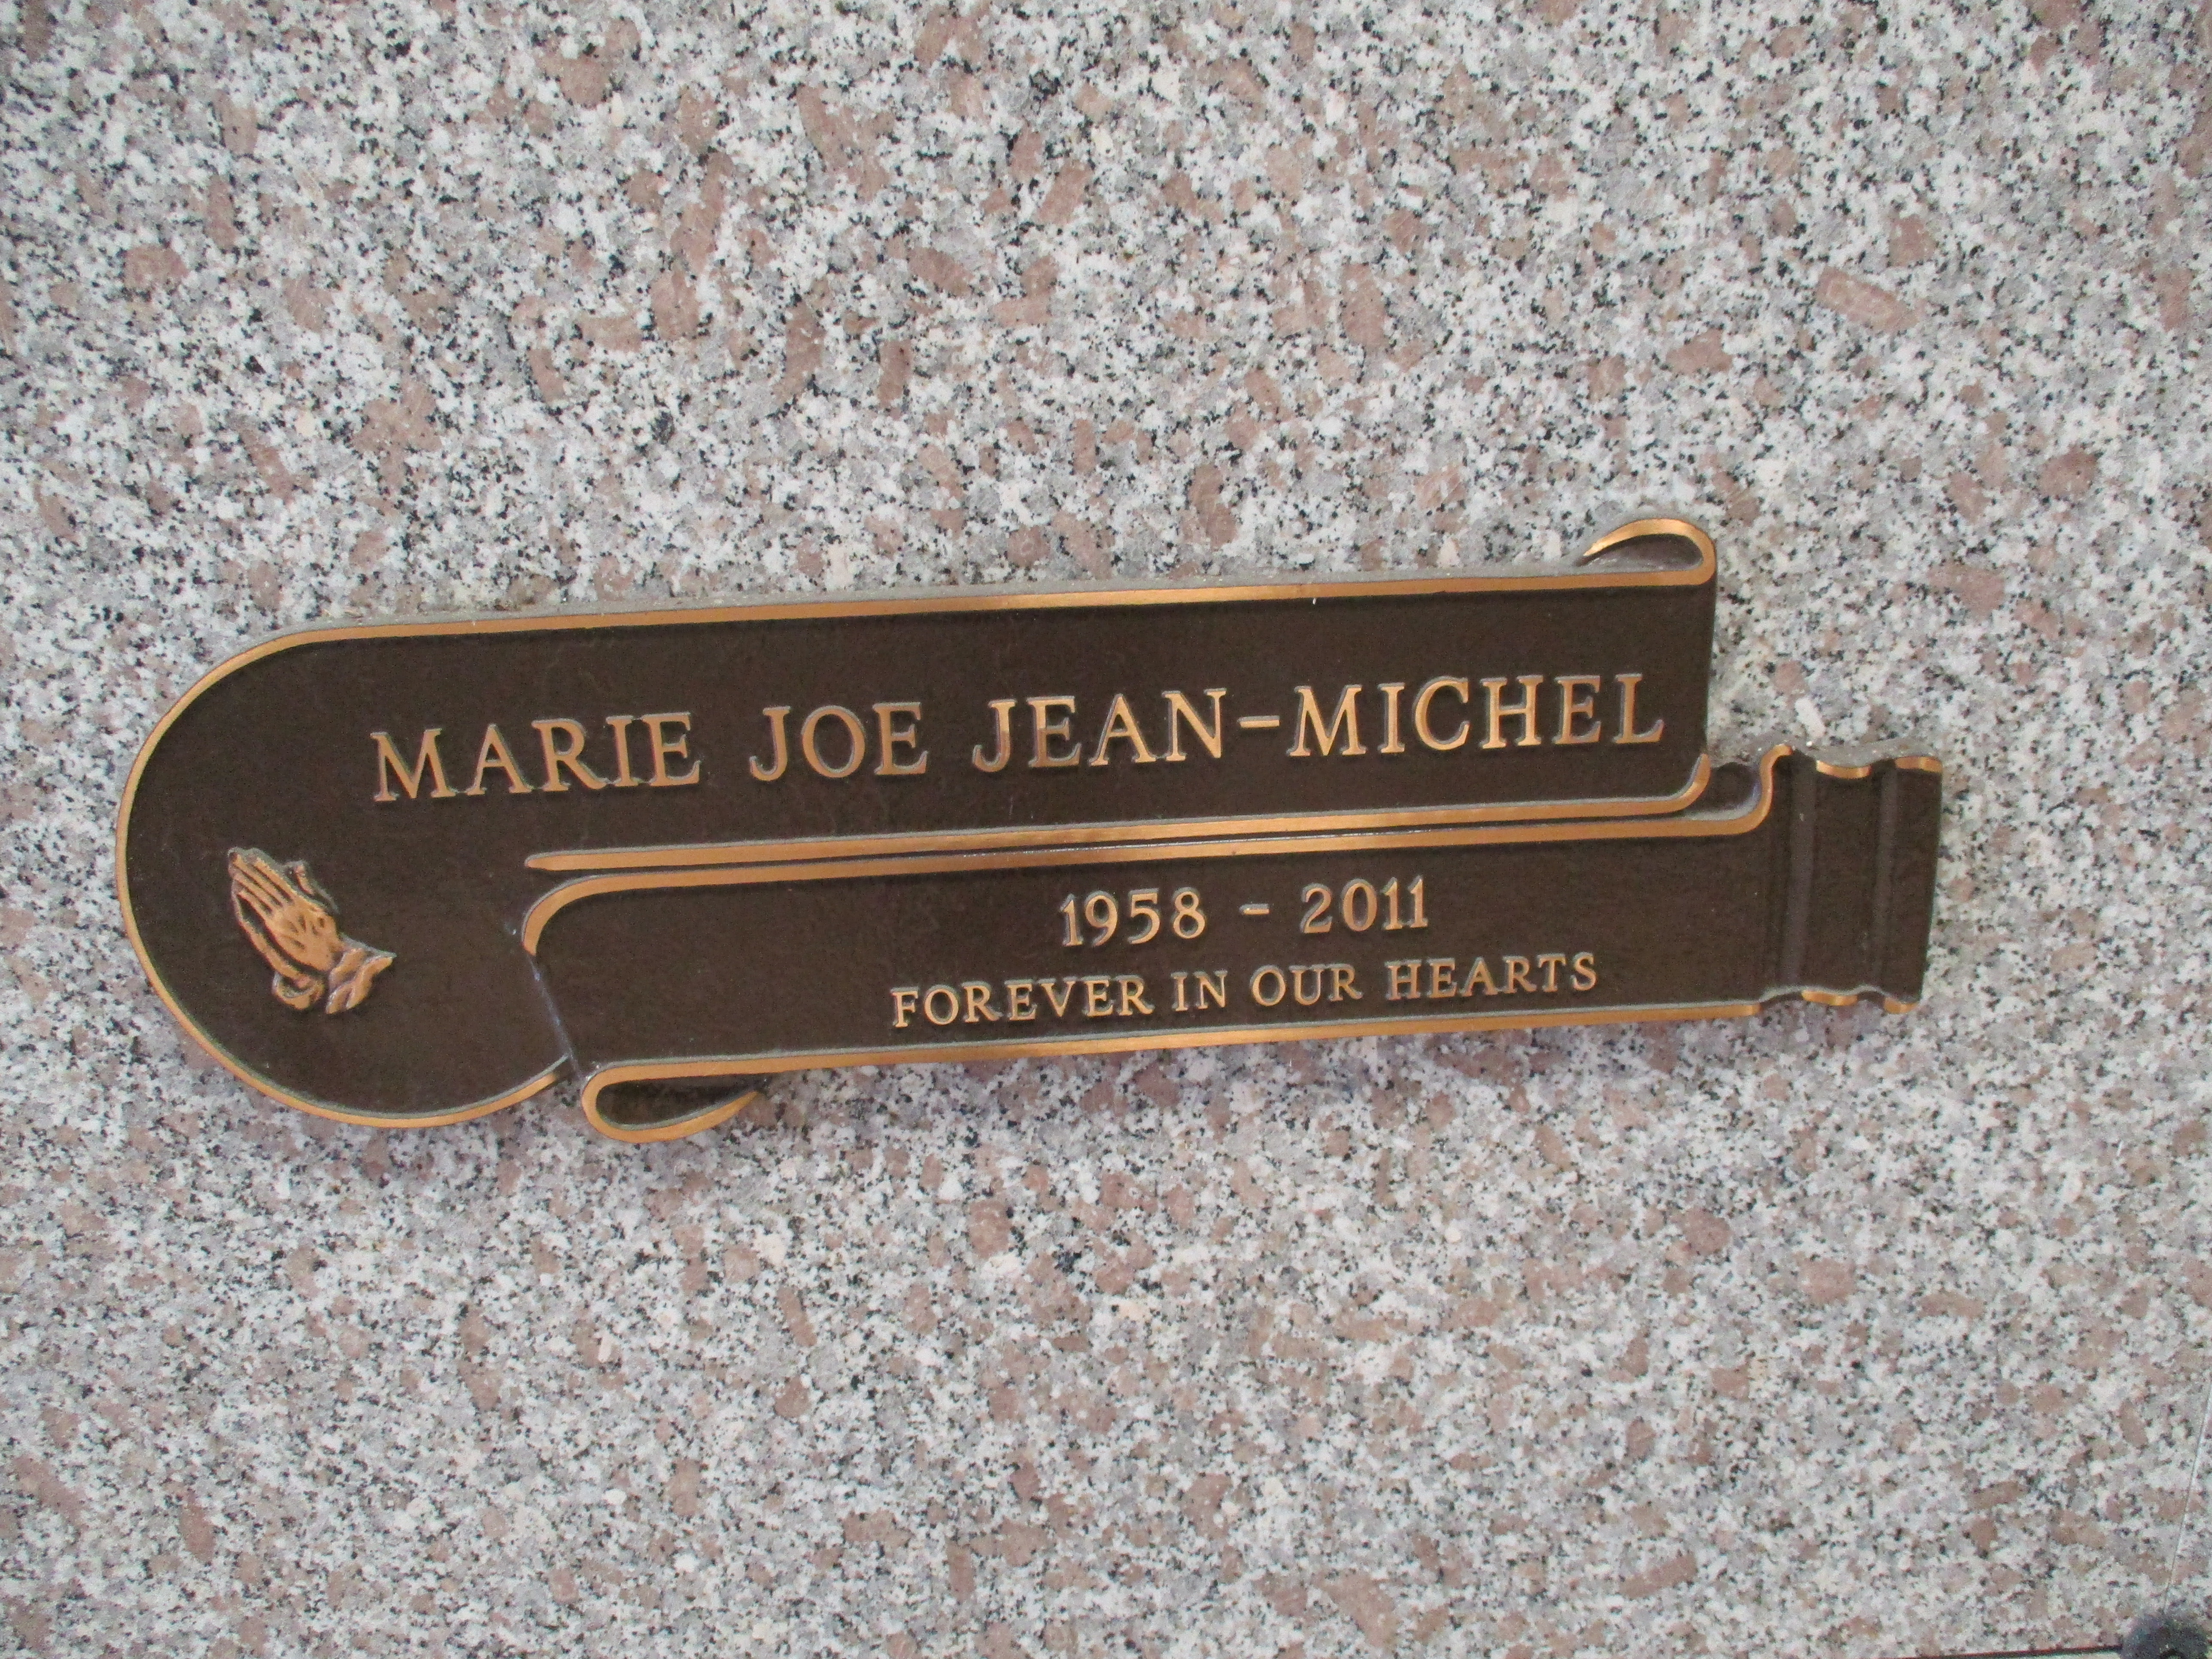 Marie Joe Jean-Michel